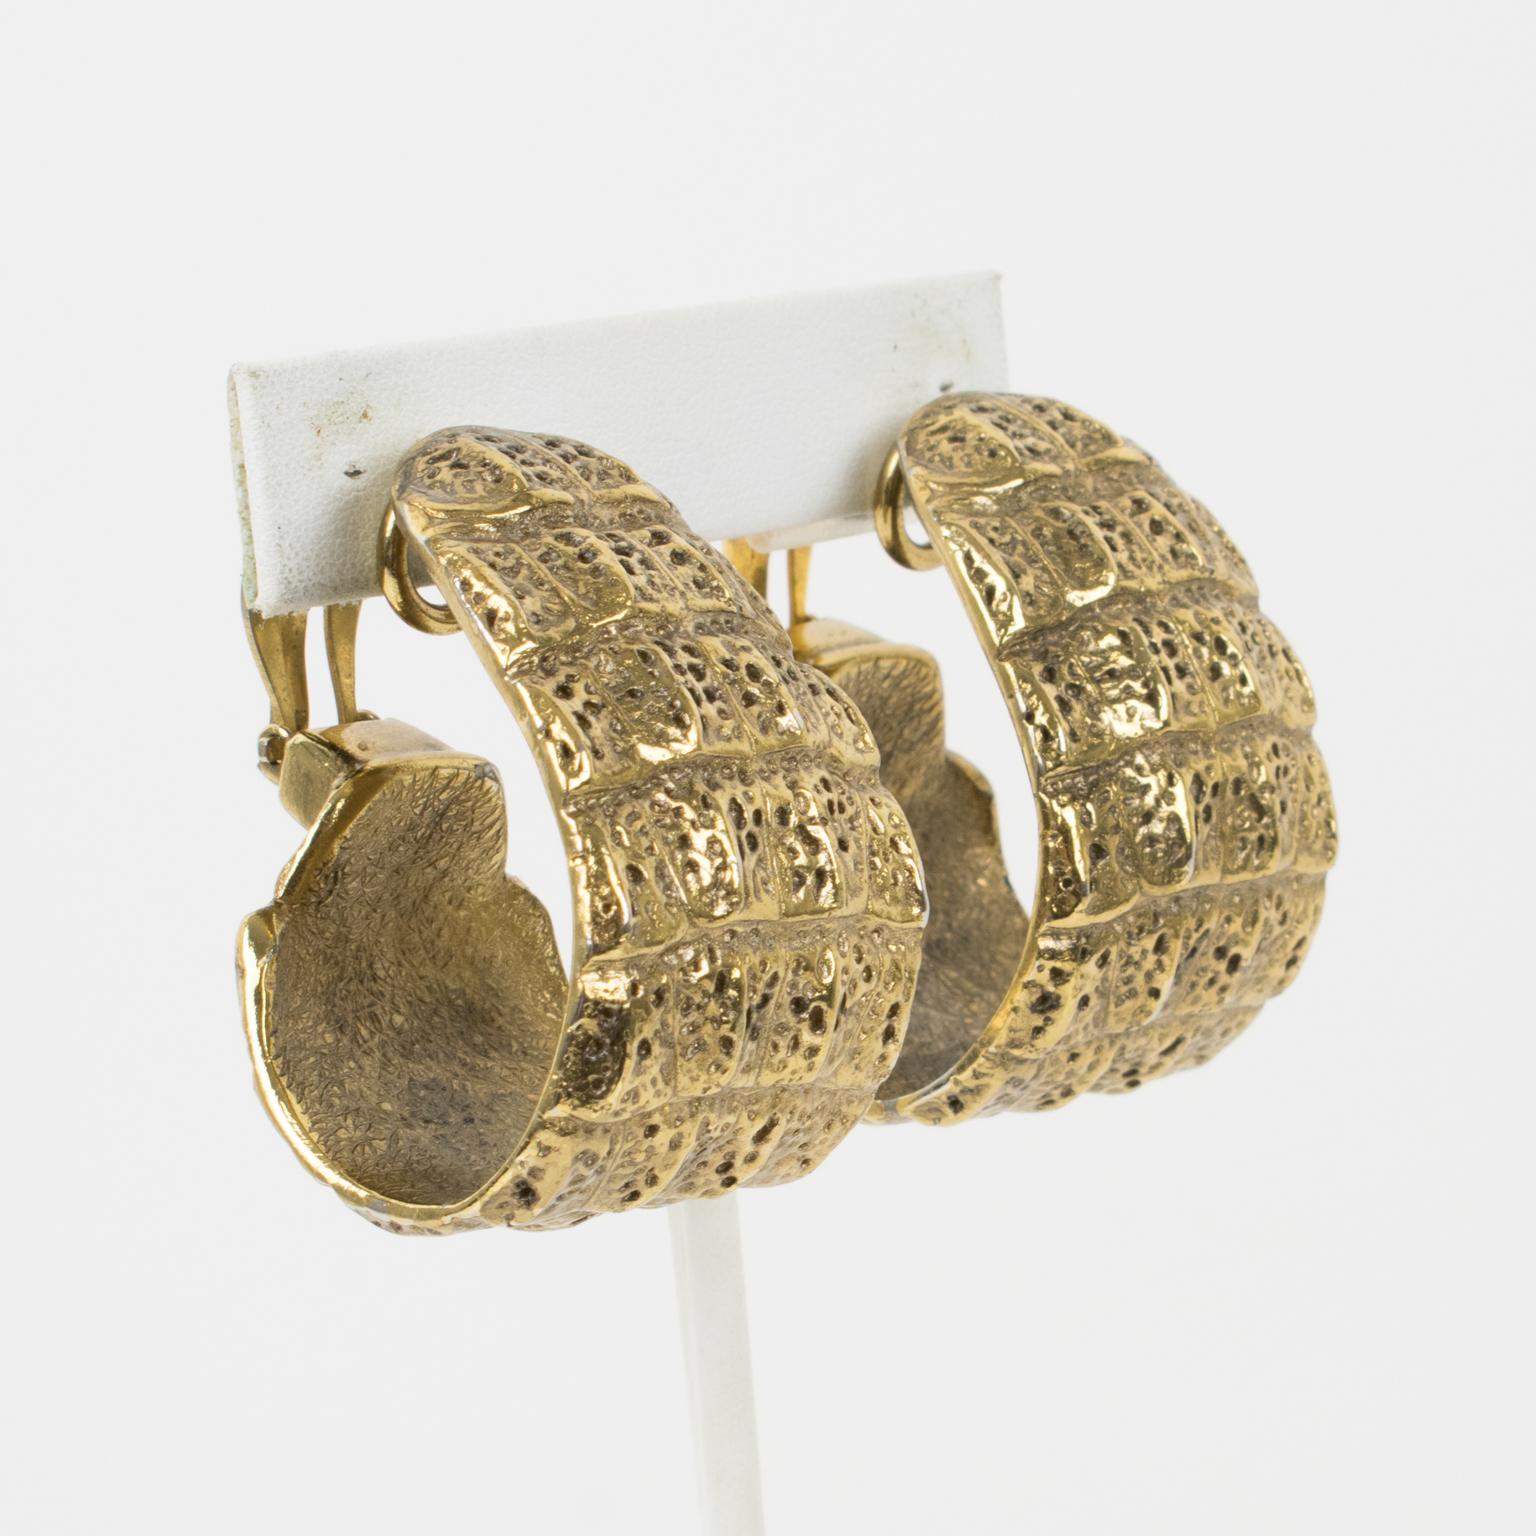 Diese stilvollen Yves Saint Laurent YSL Paris Clip-Ohrringe haben eine massive, dimensionale Ringform mit vergoldetem Metall, das mit einem Krokodilprägemuster strukturiert ist. Die Ohrringe sind mit dem durchbrochenen Logo 